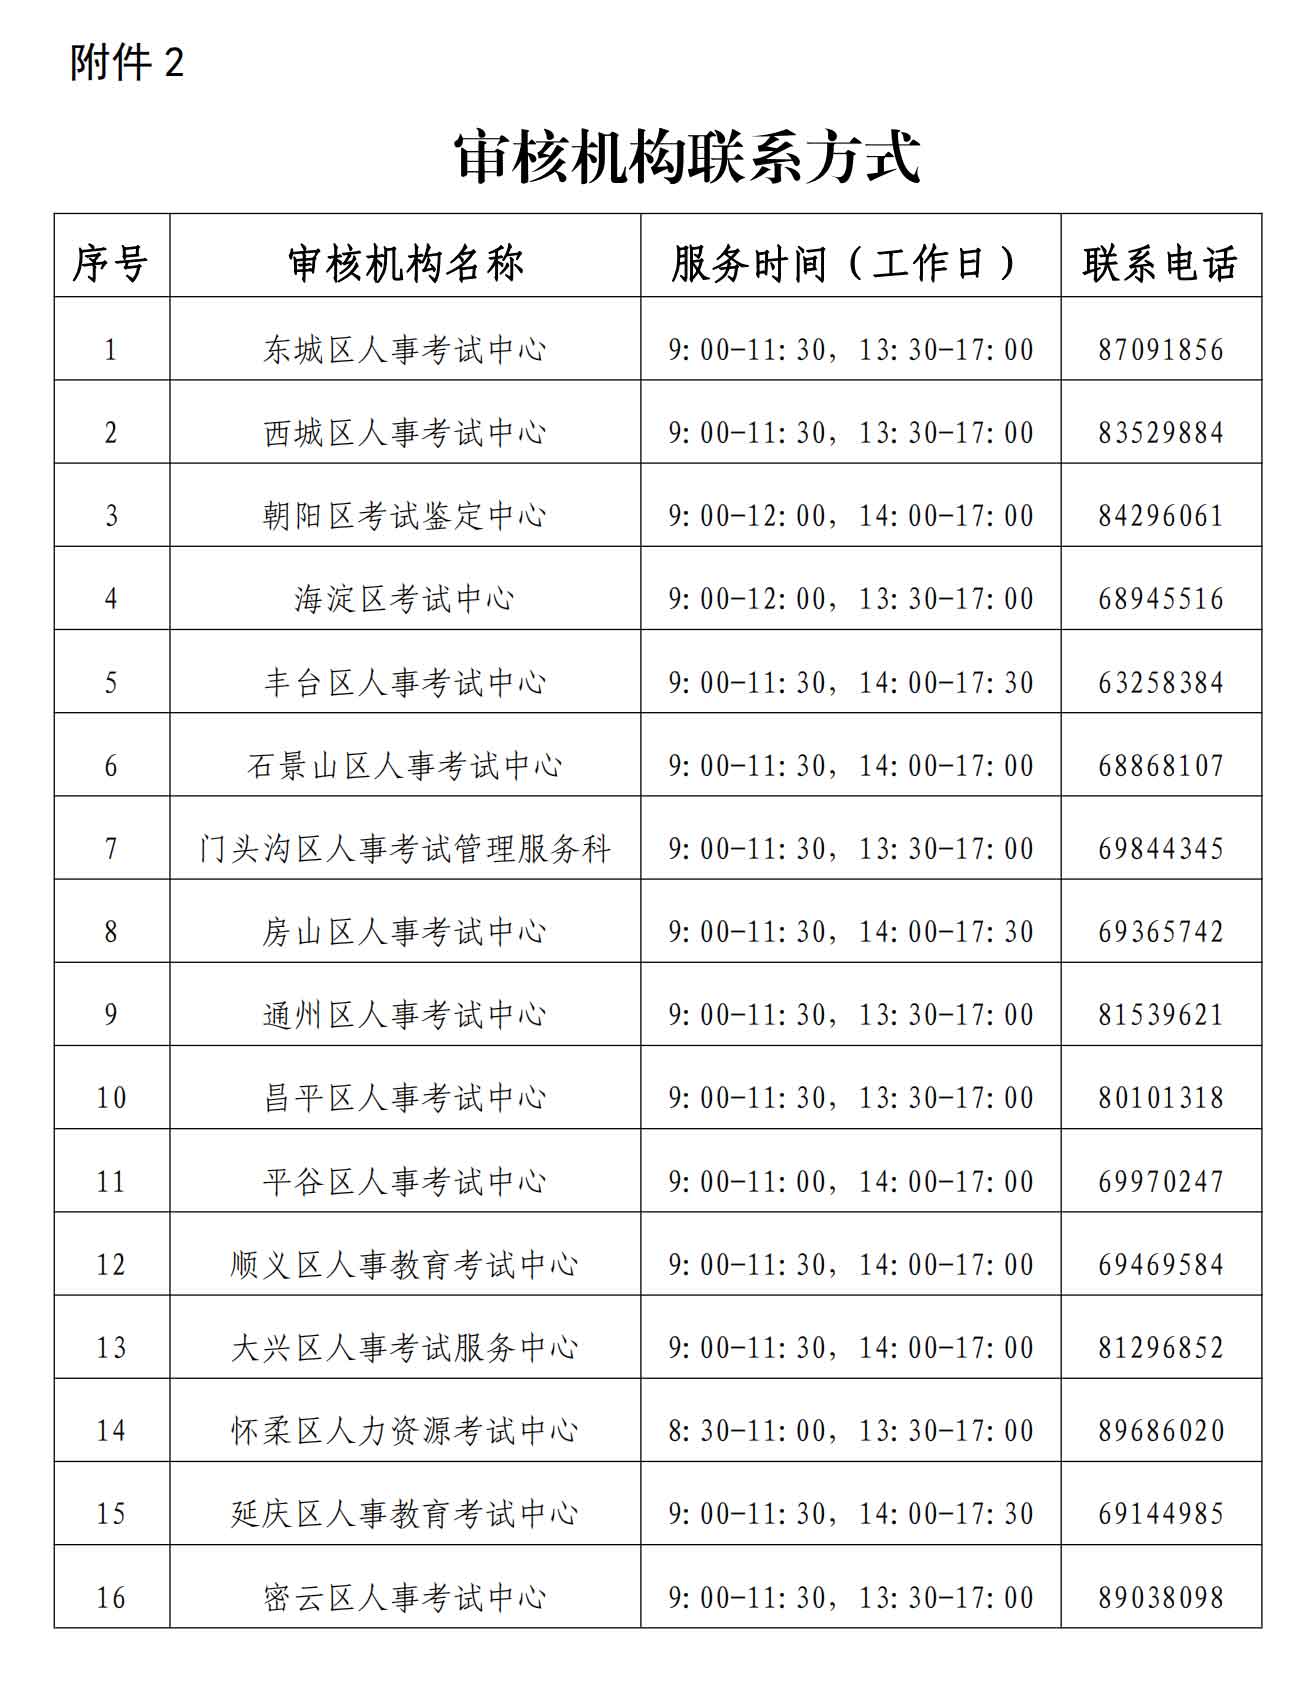 北京2021年度一级建造师资格考试报名工作的通知